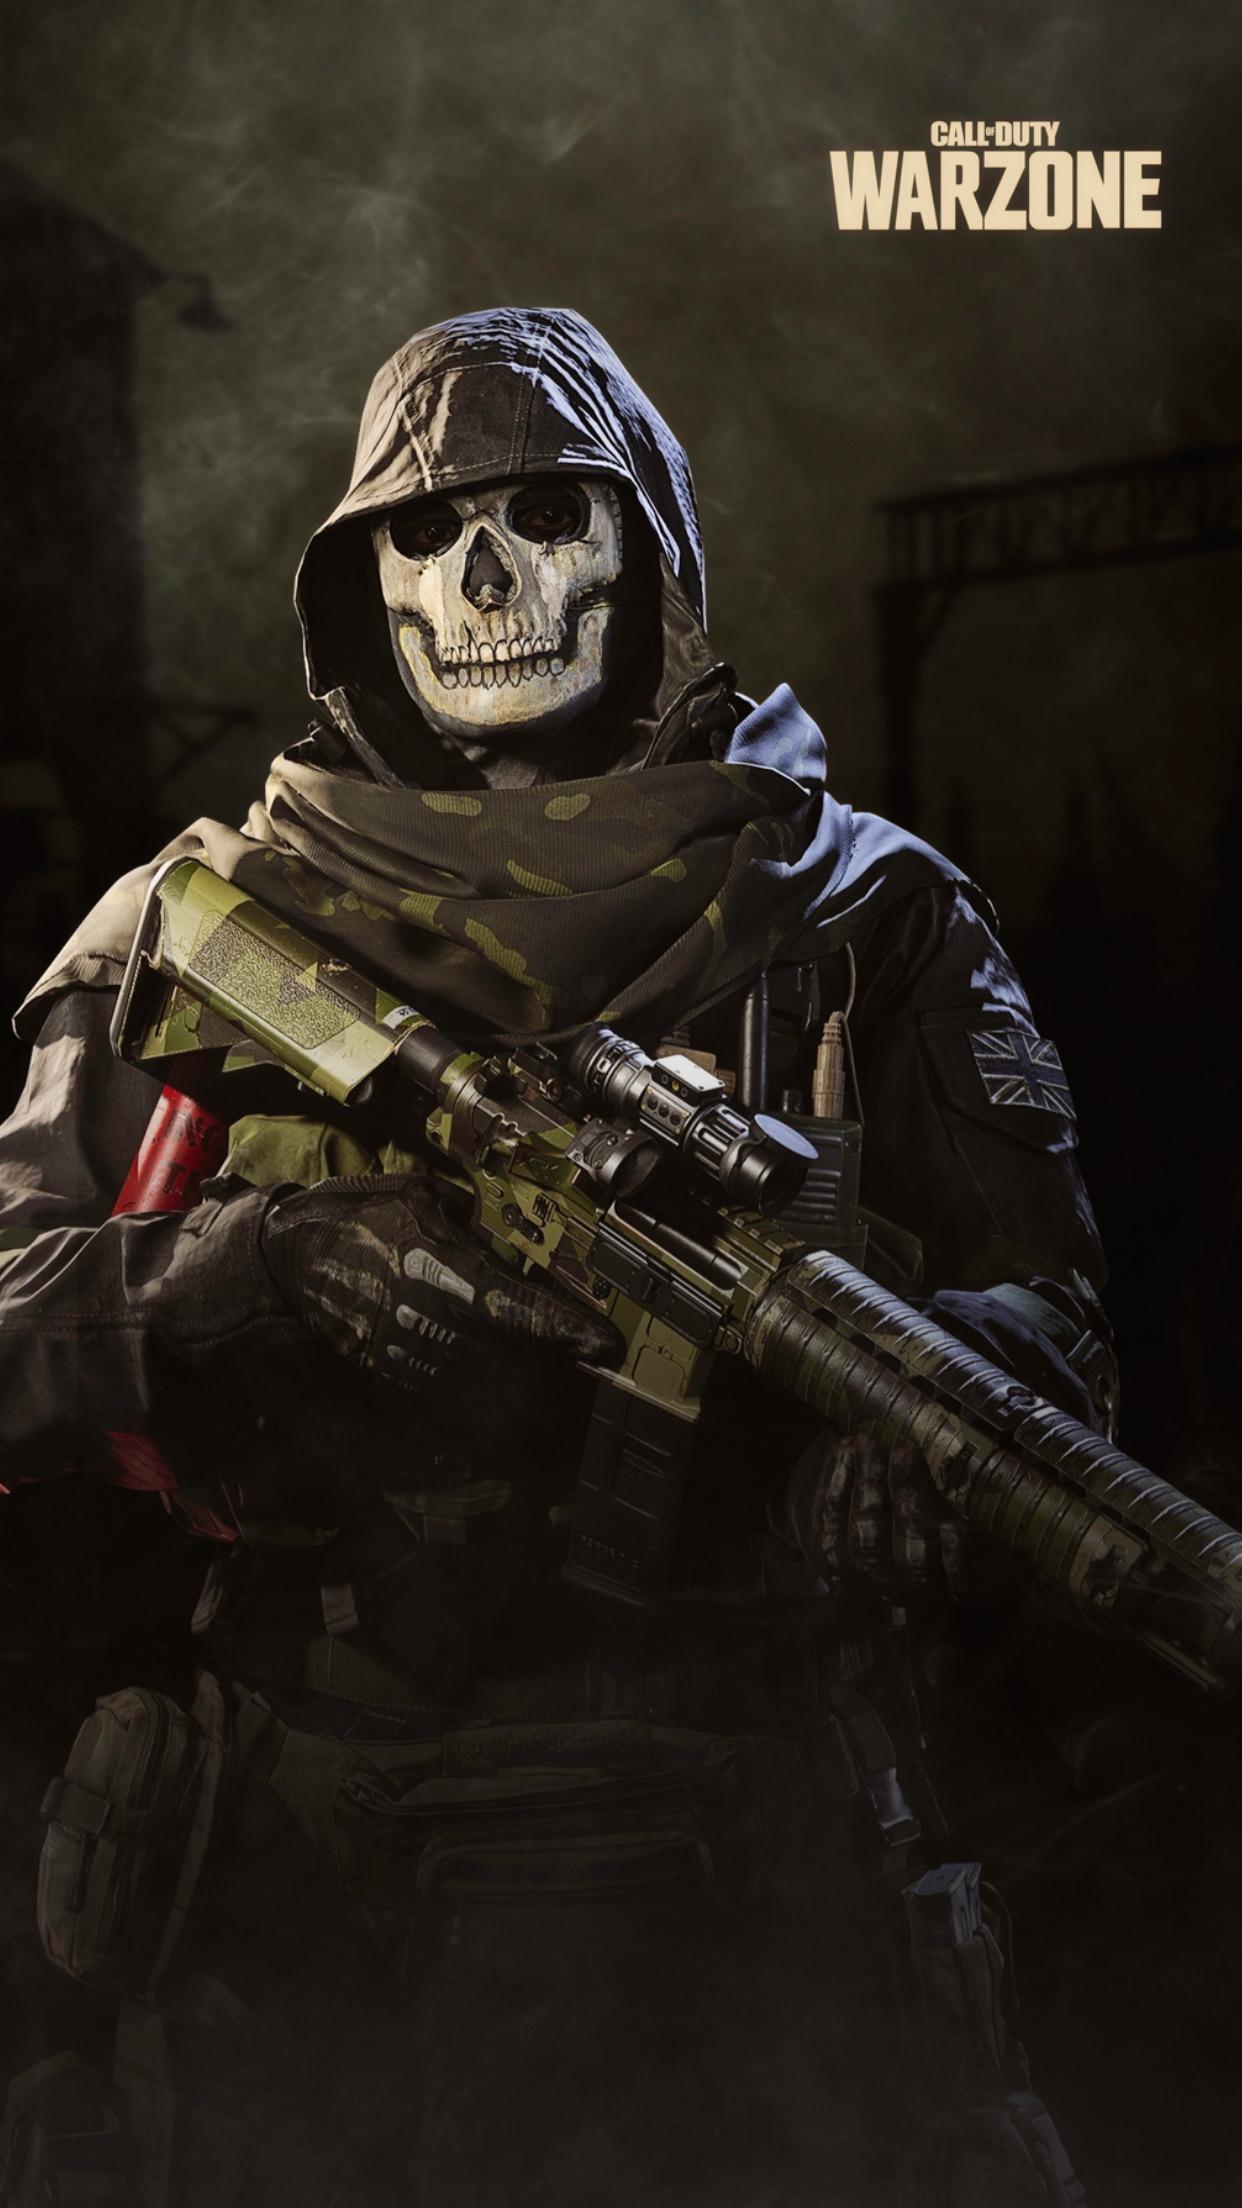 Wallpaper Call Of Duty - Gambar Ngetrend dan VIRAL